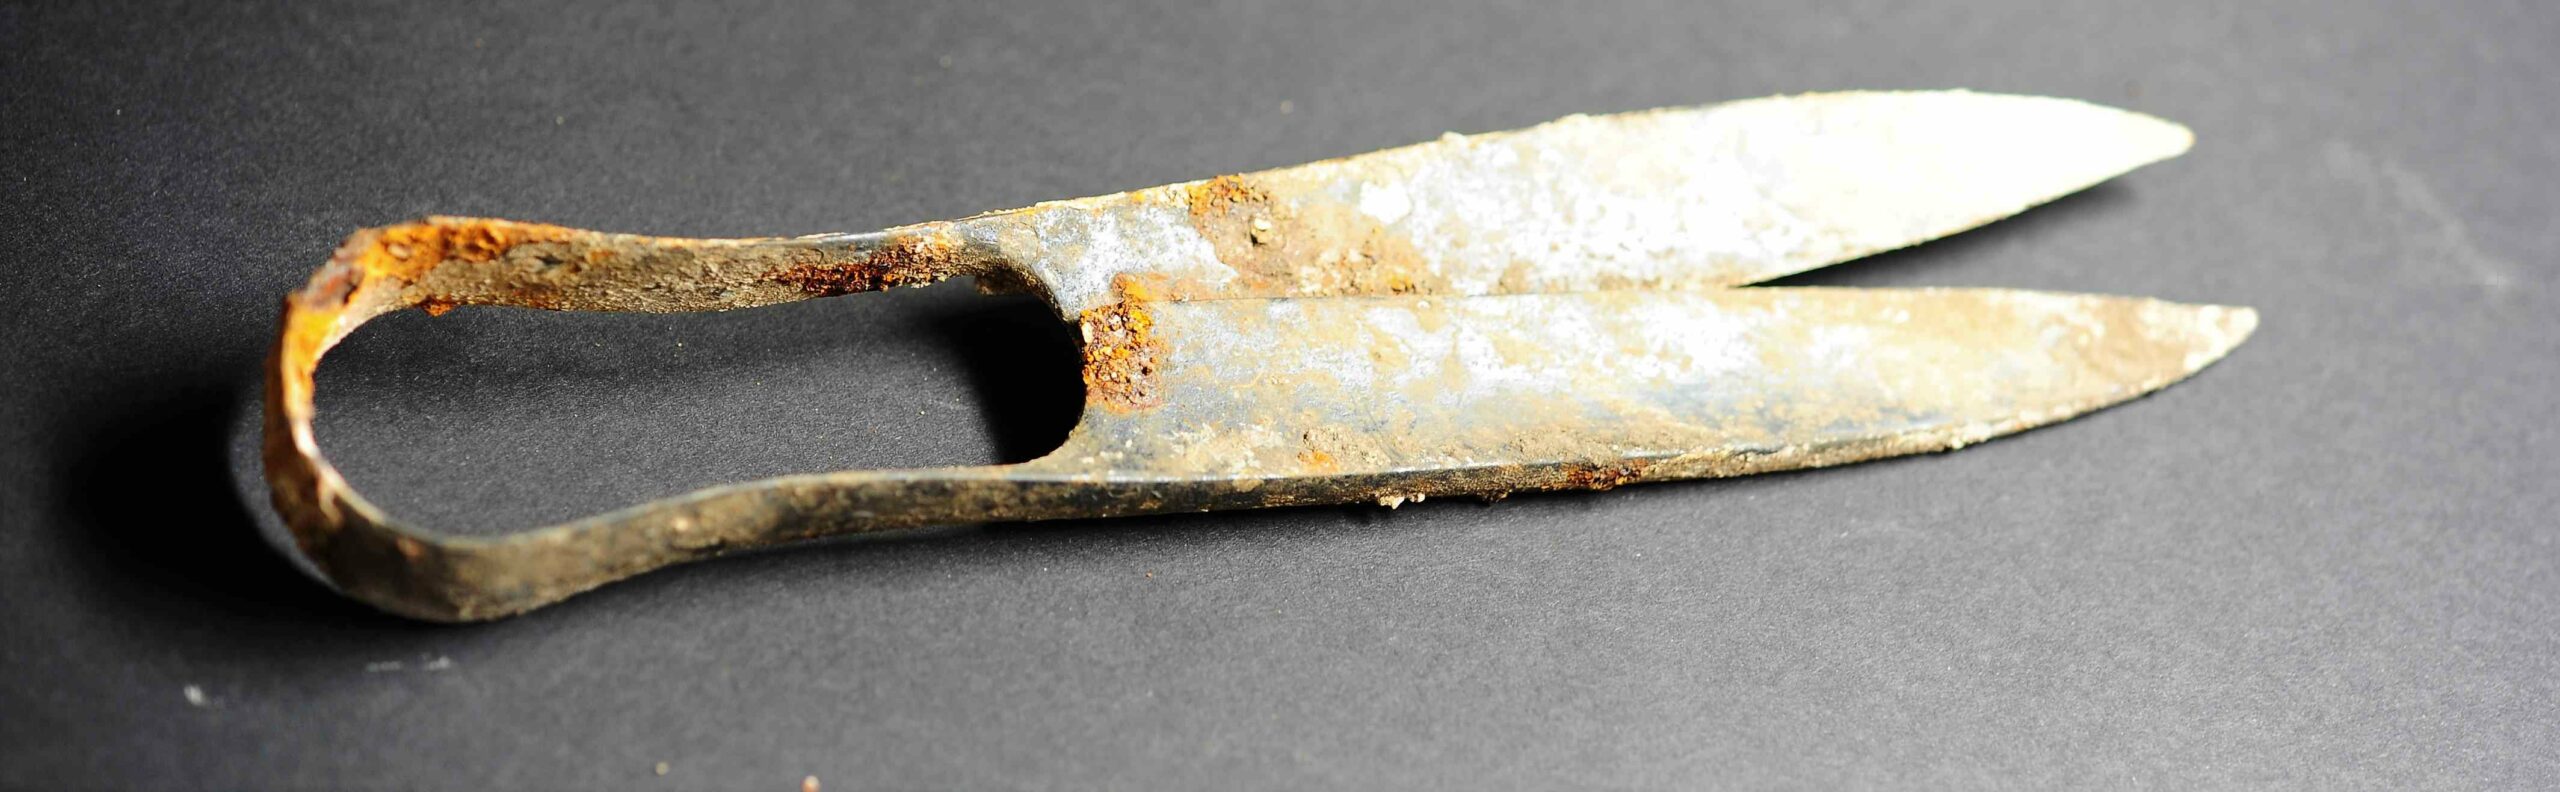 2,300 година старе маказе и 'склопљени' мач откривени у келтској кремационој гробници у Немачкој 2